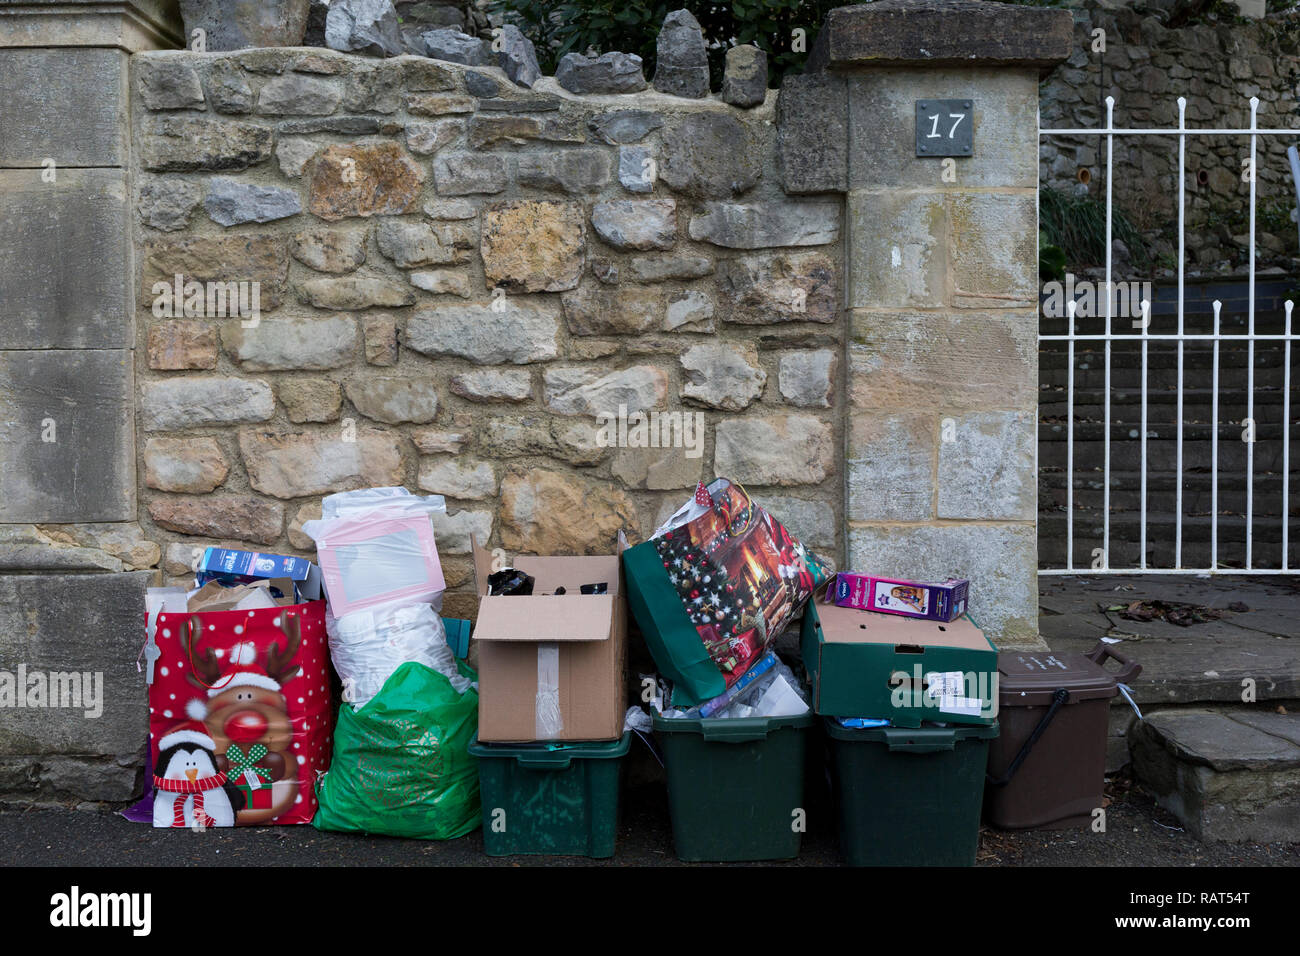 Der detritus einer Familie Weihnachten wartet auf die nächste recycling Sammlung von der lokalen Behörde, am 27. Dezember 2018, in Clevedon, Noth Somerset, UK. Stockfoto